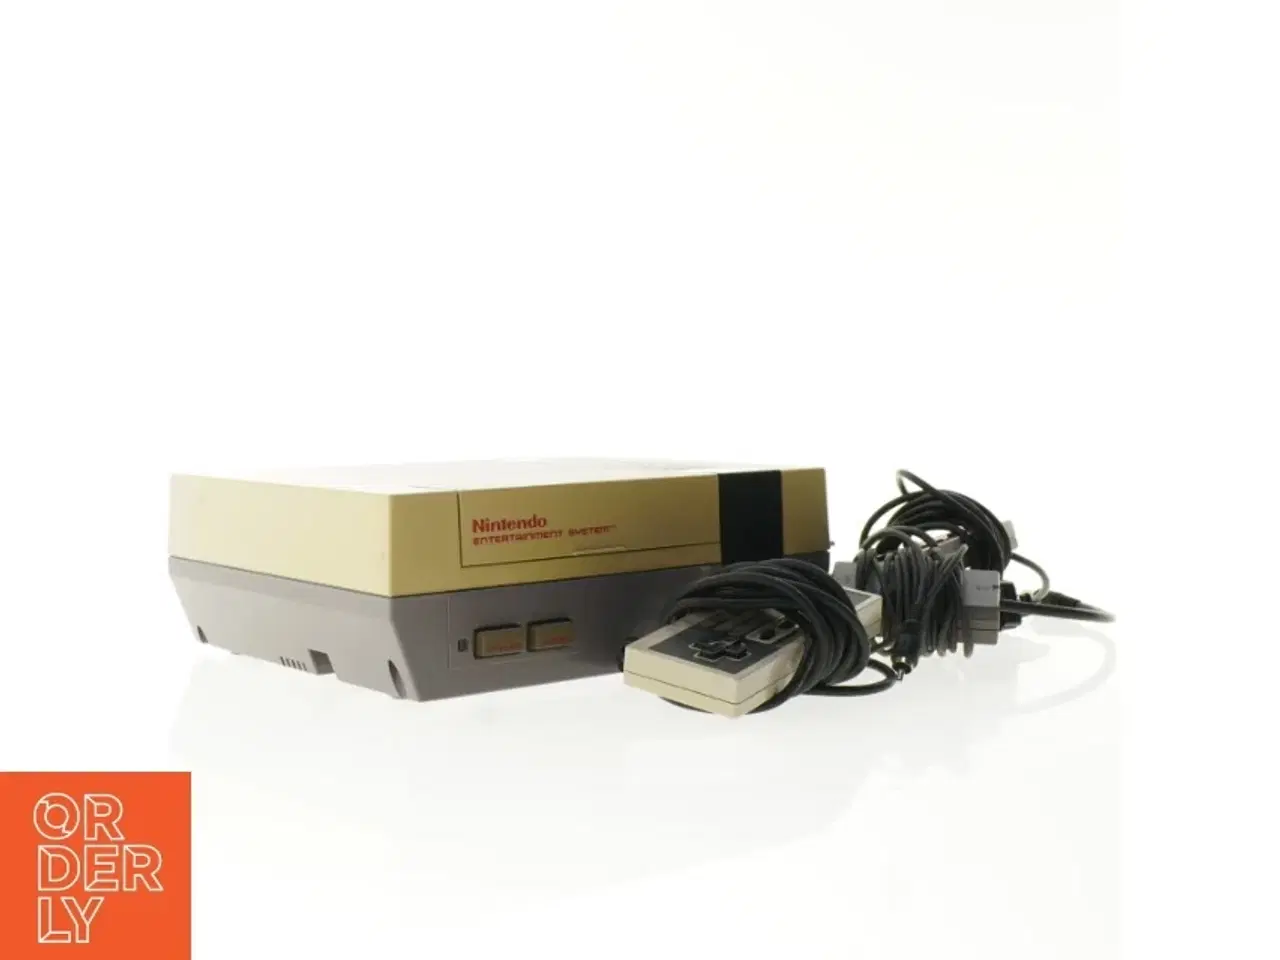 Billede 1 - Nintendo Entertainment System med tilbehør fra Nintendo (str. 26 x 20 x 9 cm)